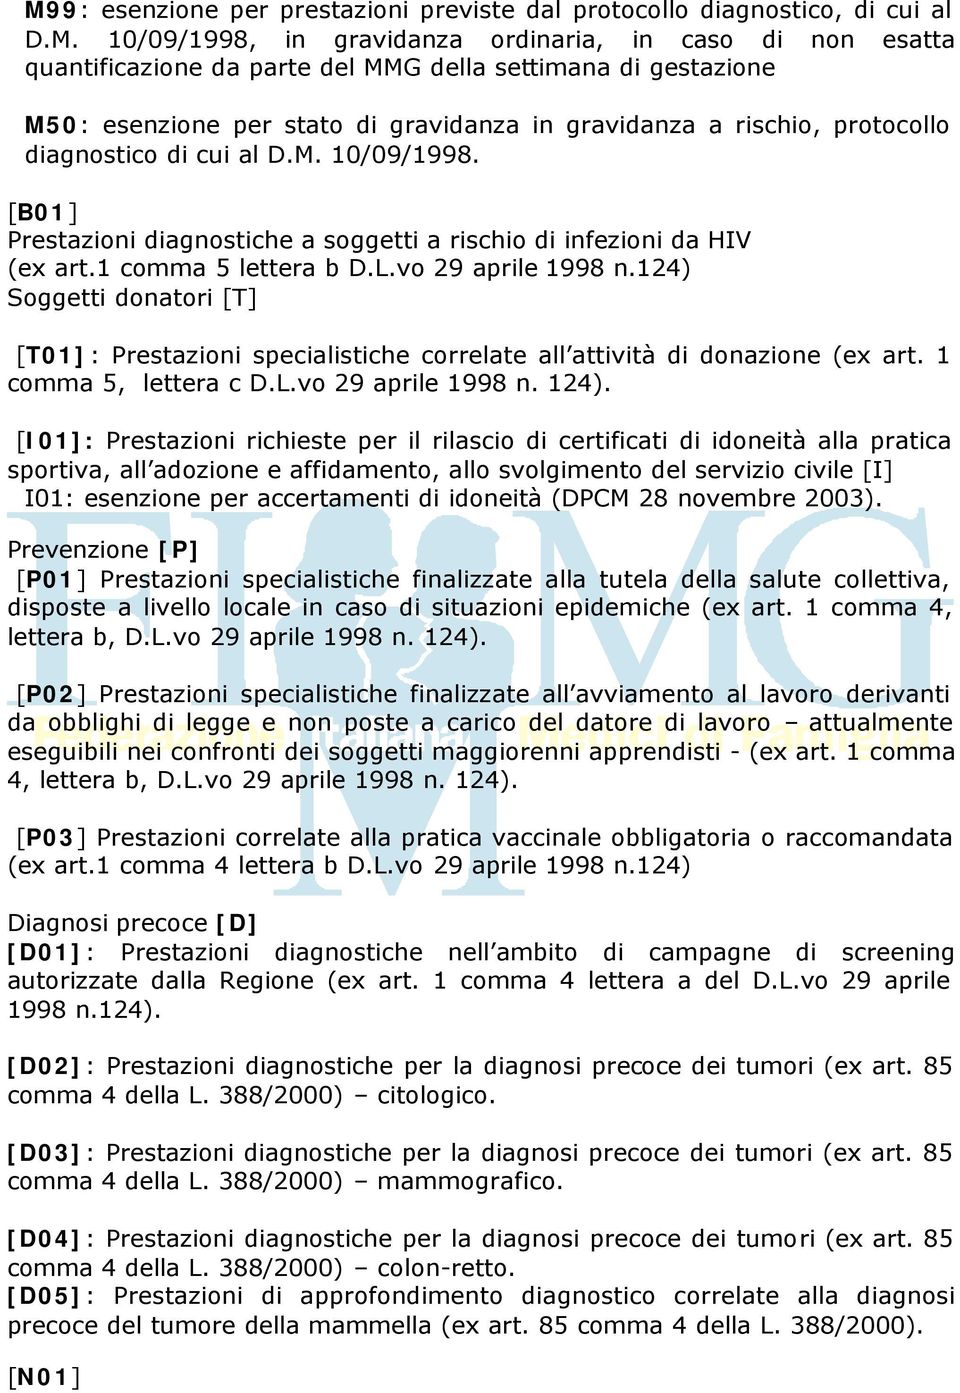 [B01] Prestazioni diagnostiche a soggetti a rischio di infezioni da HIV (ex art.1 comma 5 lettera b D.L.vo 29 aprile 1998 n.